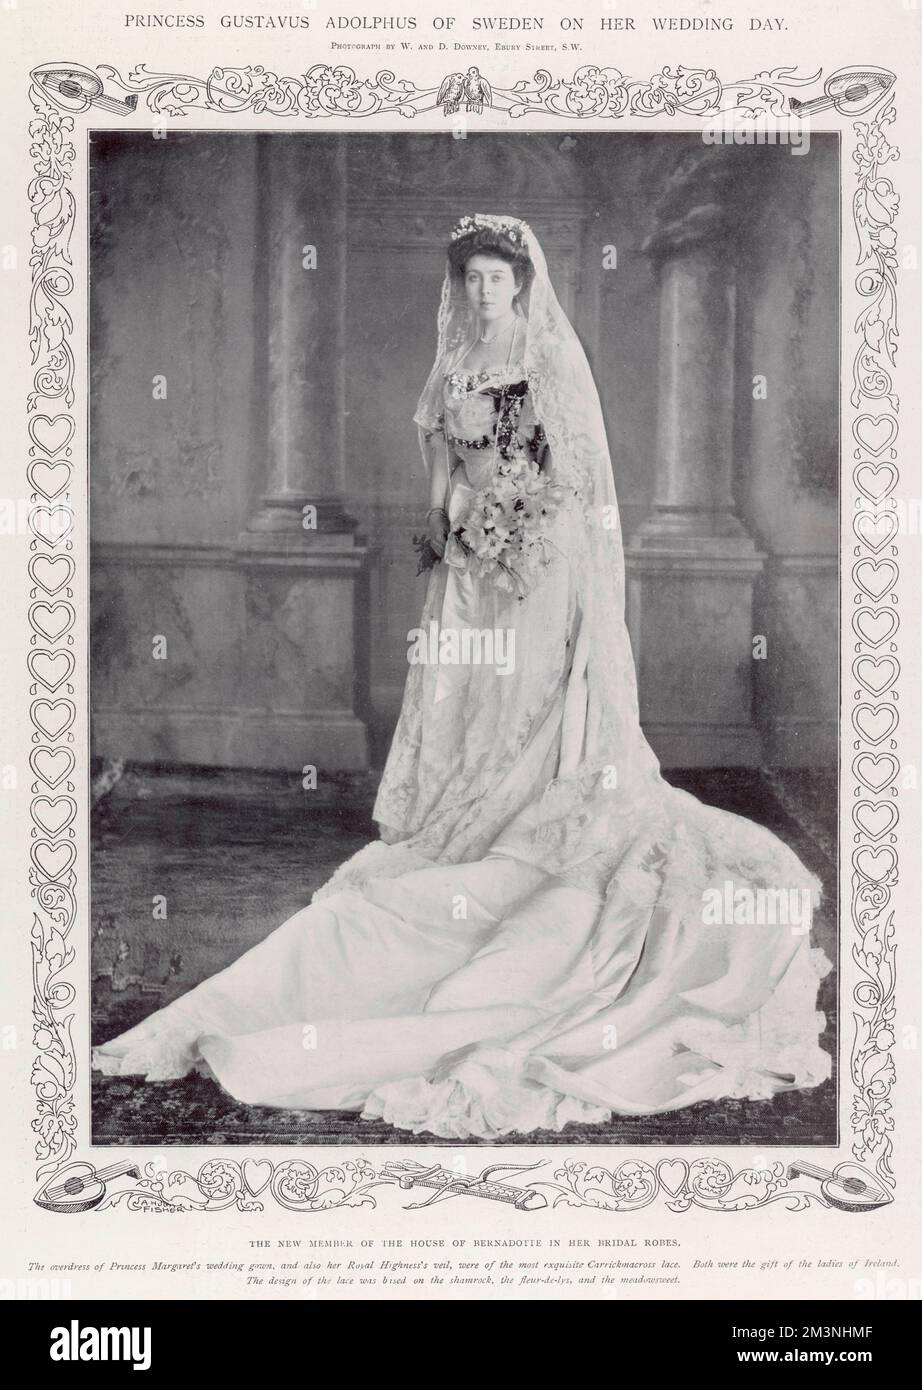 El nuevo miembro de la Casa de Bernadotte en sus trajes de novia. Princesa  Margarita de Connaught (1882 - 1920) en su vestido de boda; el sobrevestido  y el velo eran del